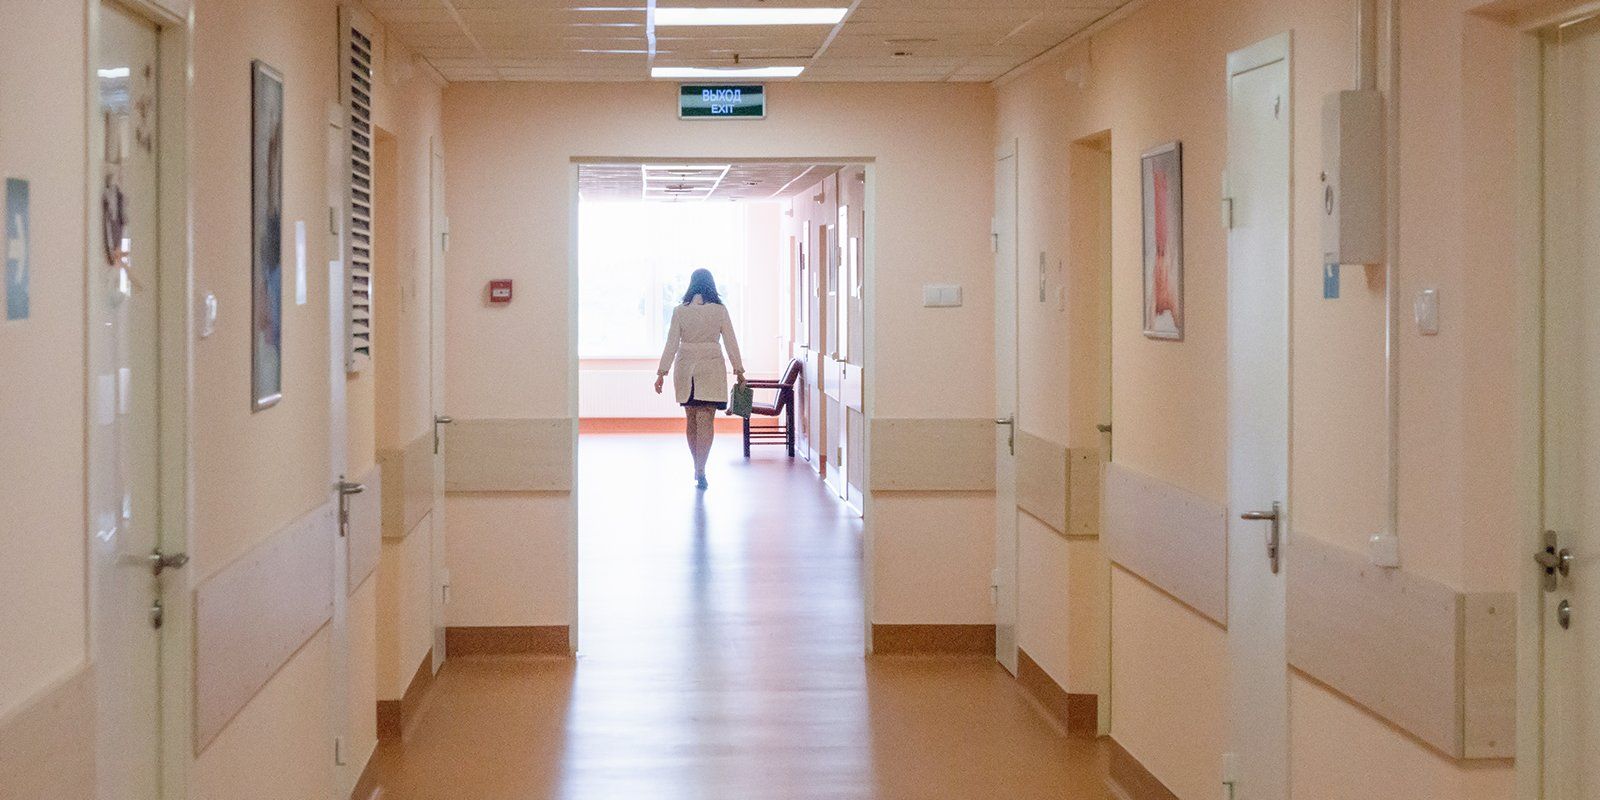 Школа женского здоровья начнет работать в Москве